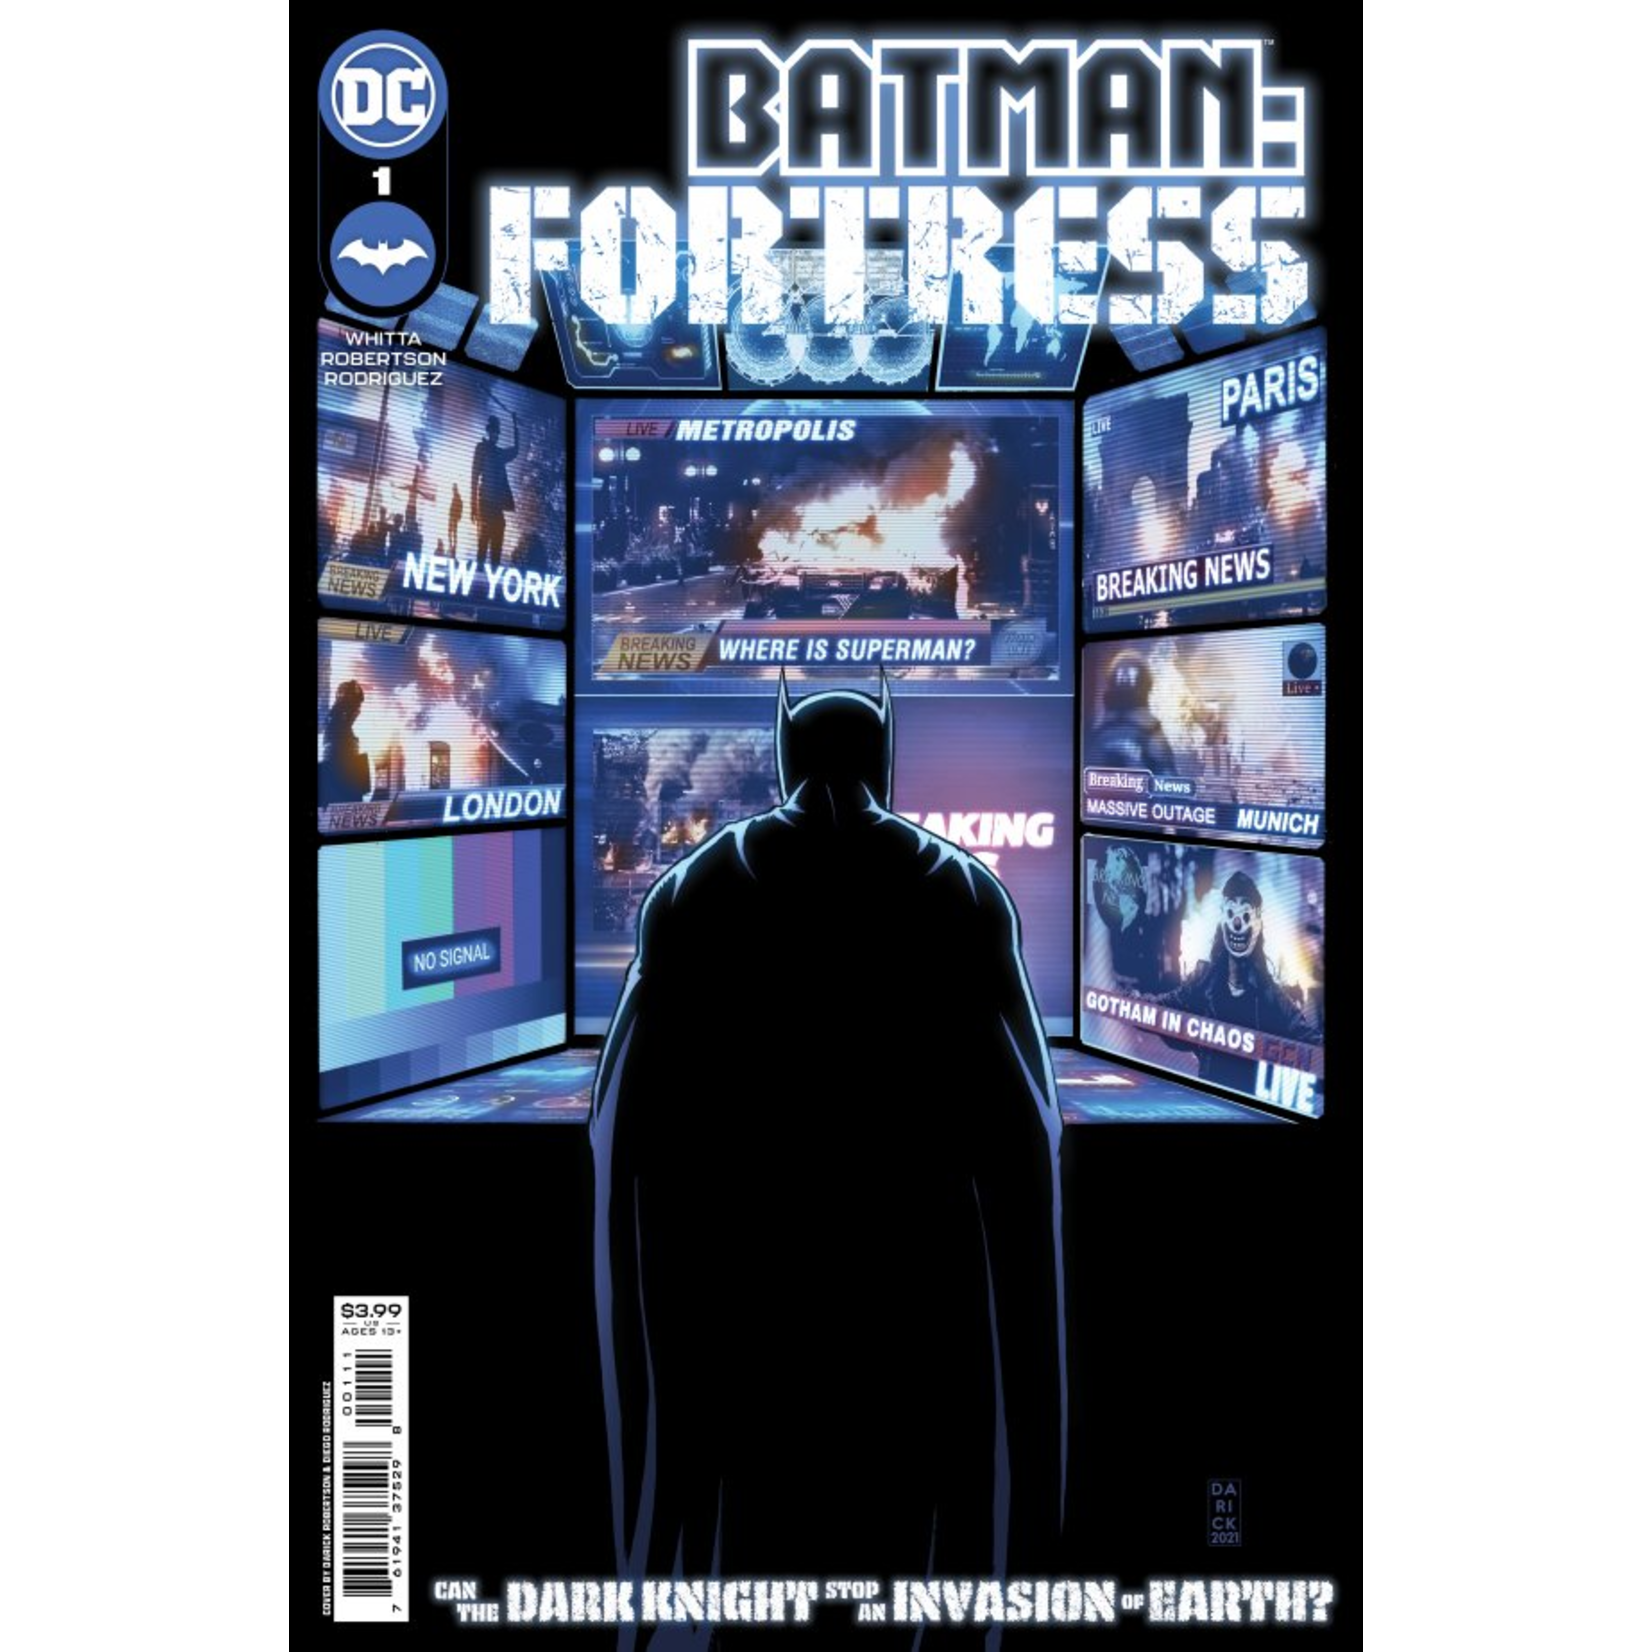 DC Comics BATMAN FORTRESS #1 (OF 8) CVR A ROBERTSON